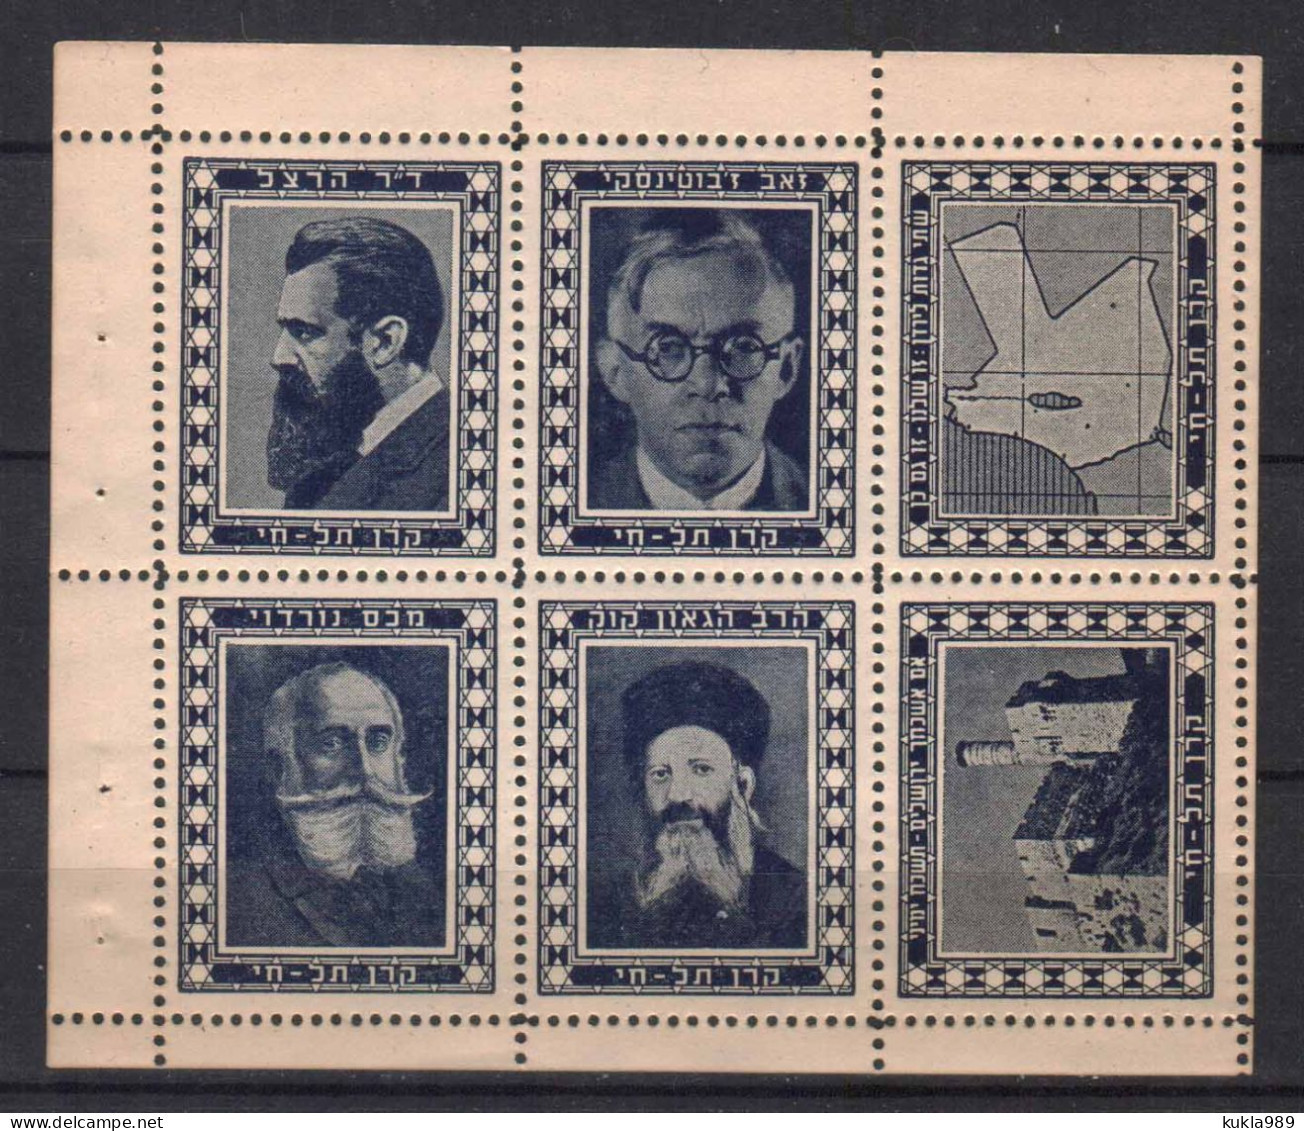 BRITISH PALESTINE 1930s ZIONIST FUND TEL HAI, BOOKLET PANE,  MNH - Hojas Y Bloques